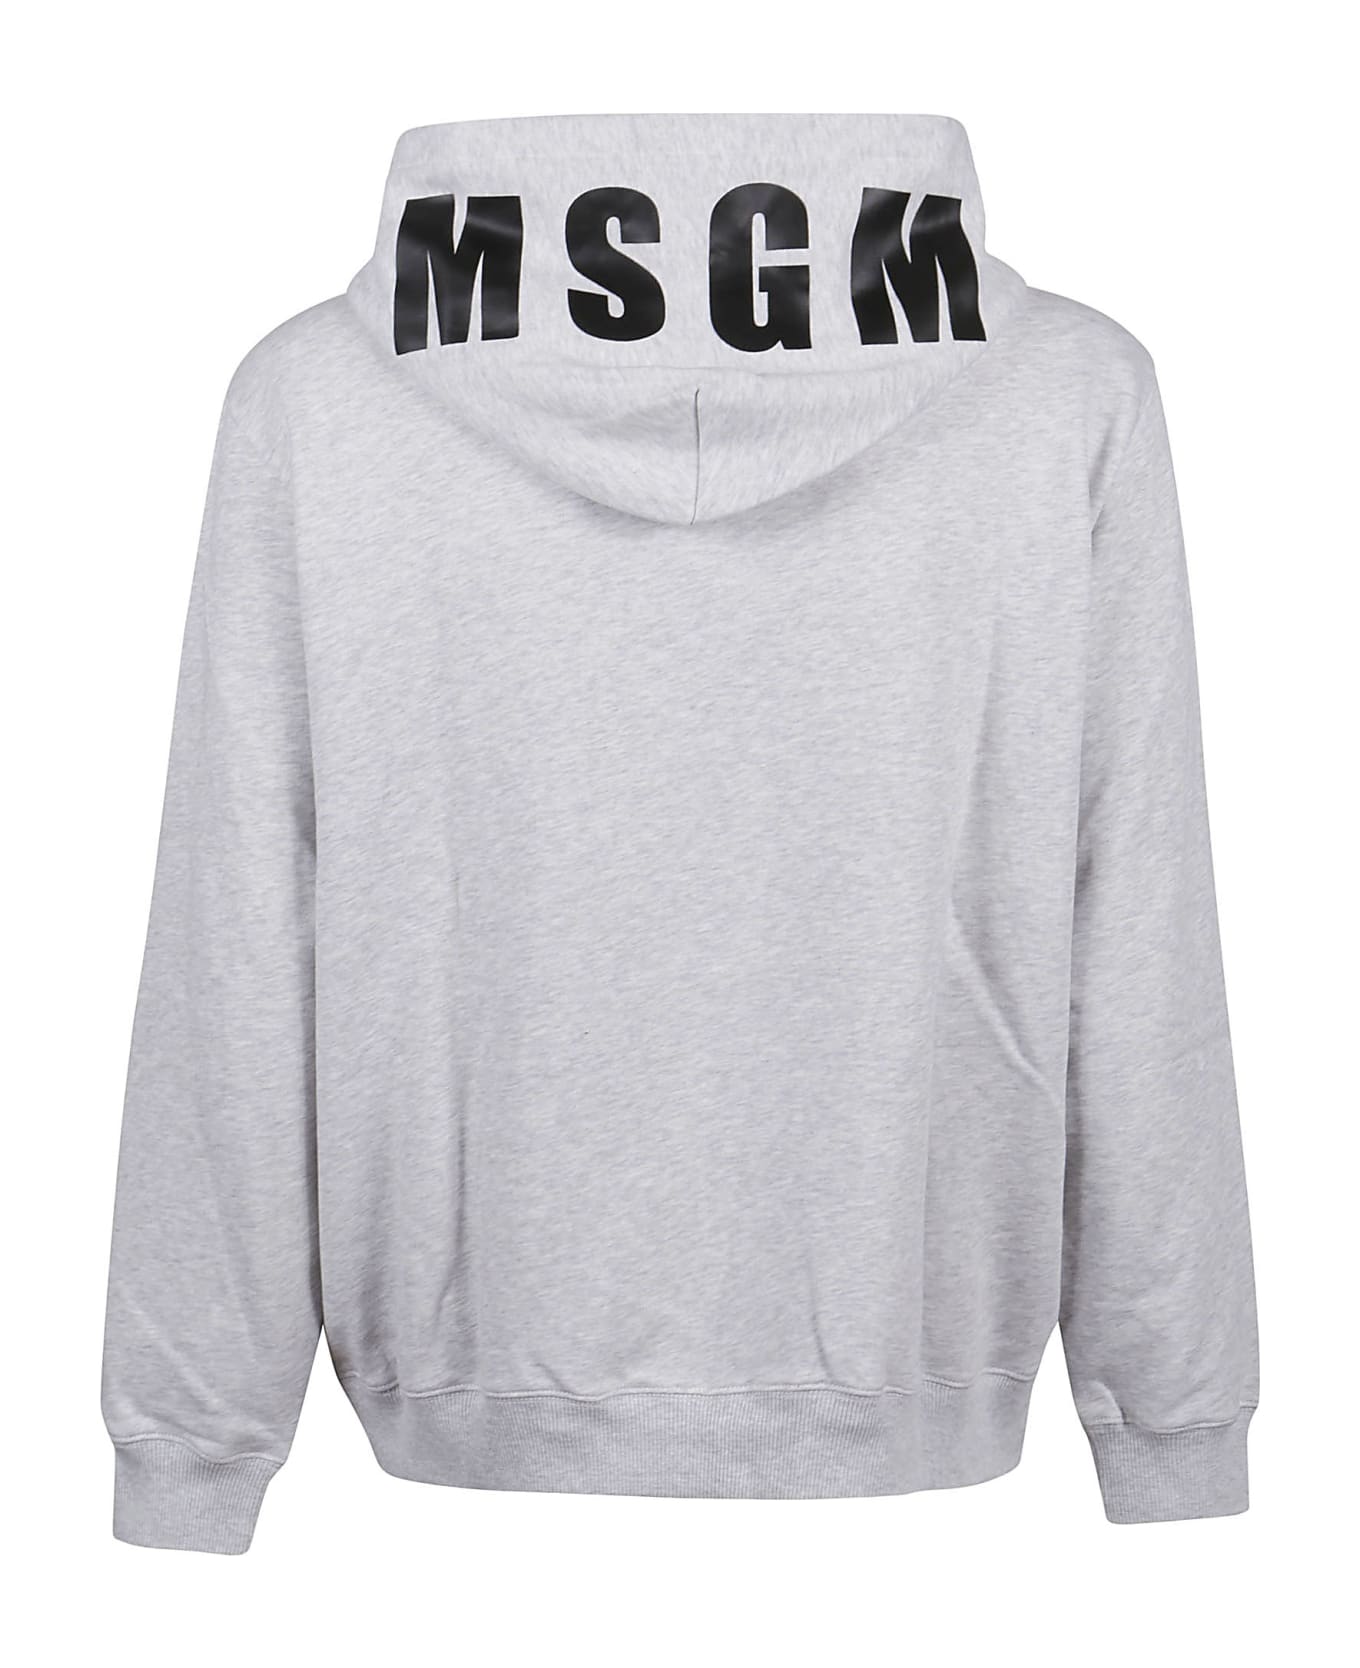 MSGM Oversized Maxilogo Sweatshirt - Light Grey Melange フリース